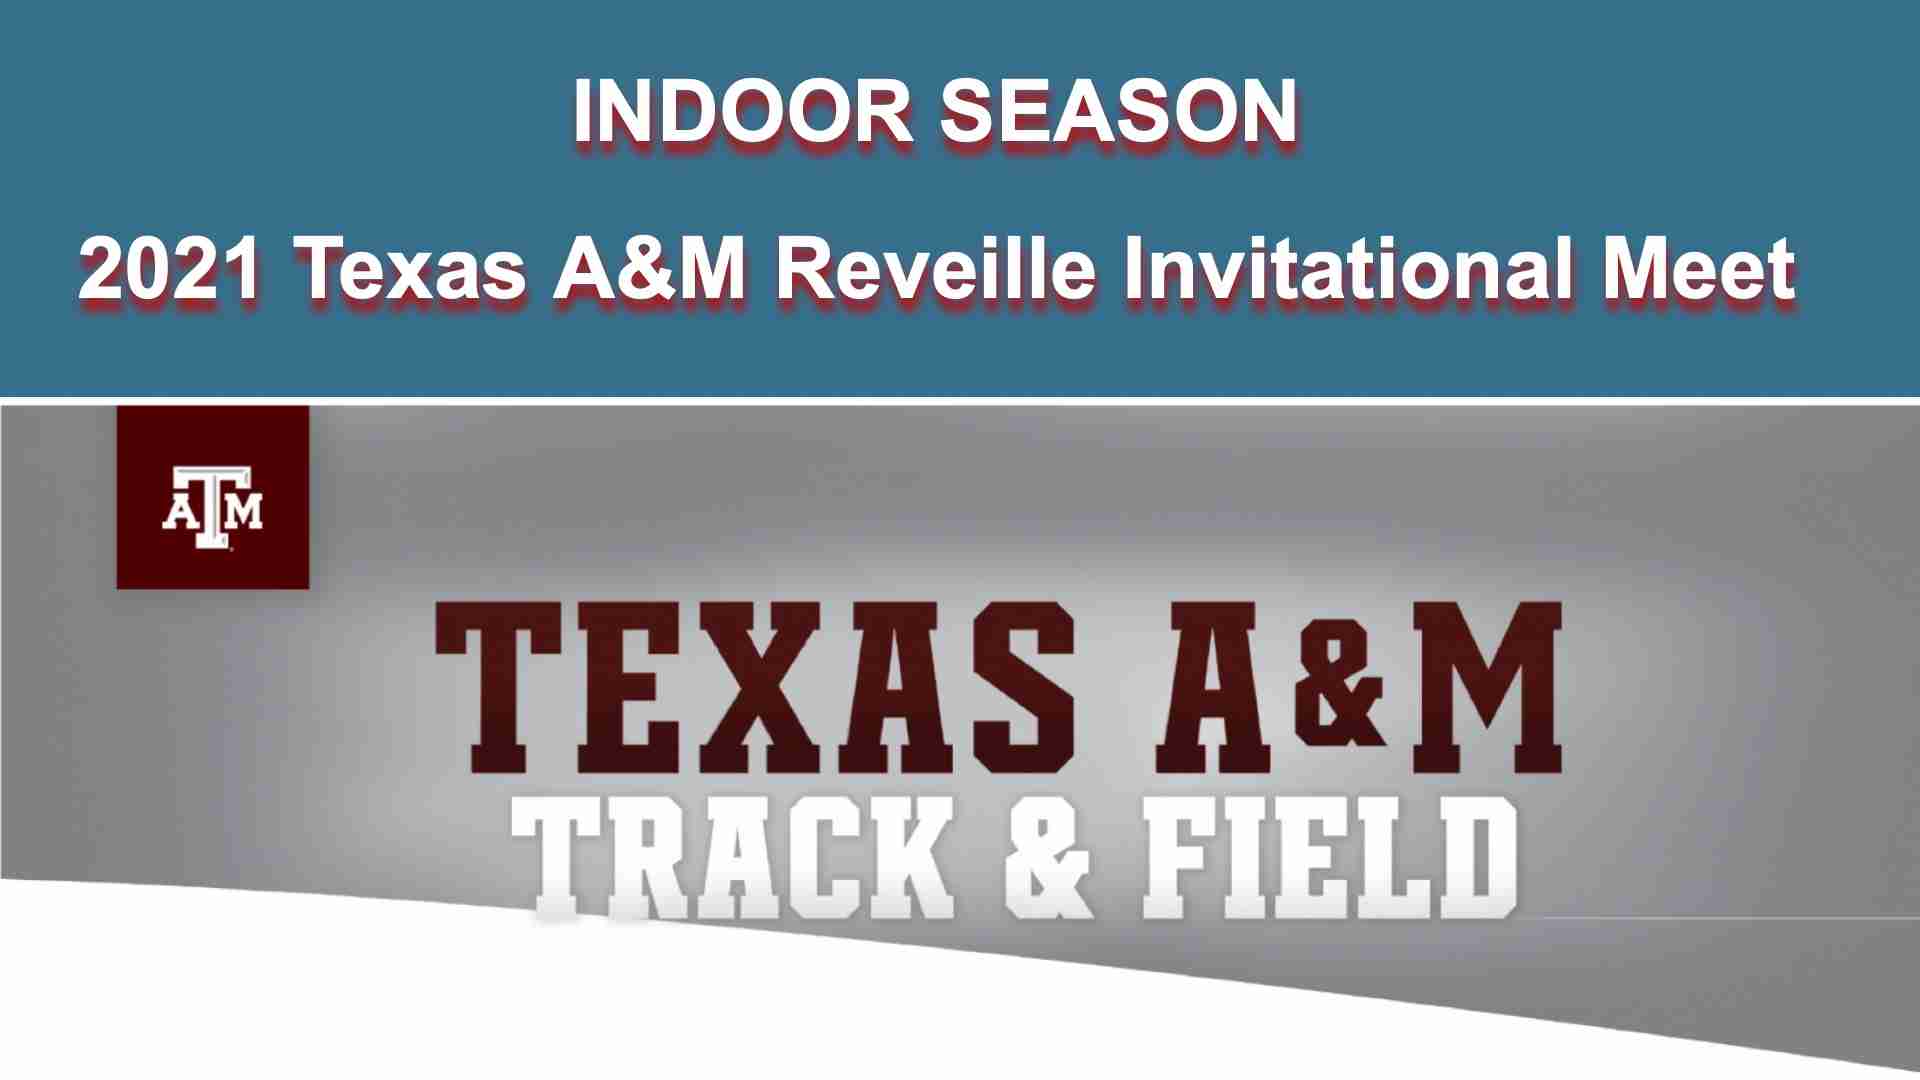 2021 Texas A&M Reveille Invitational indoor meet schedule